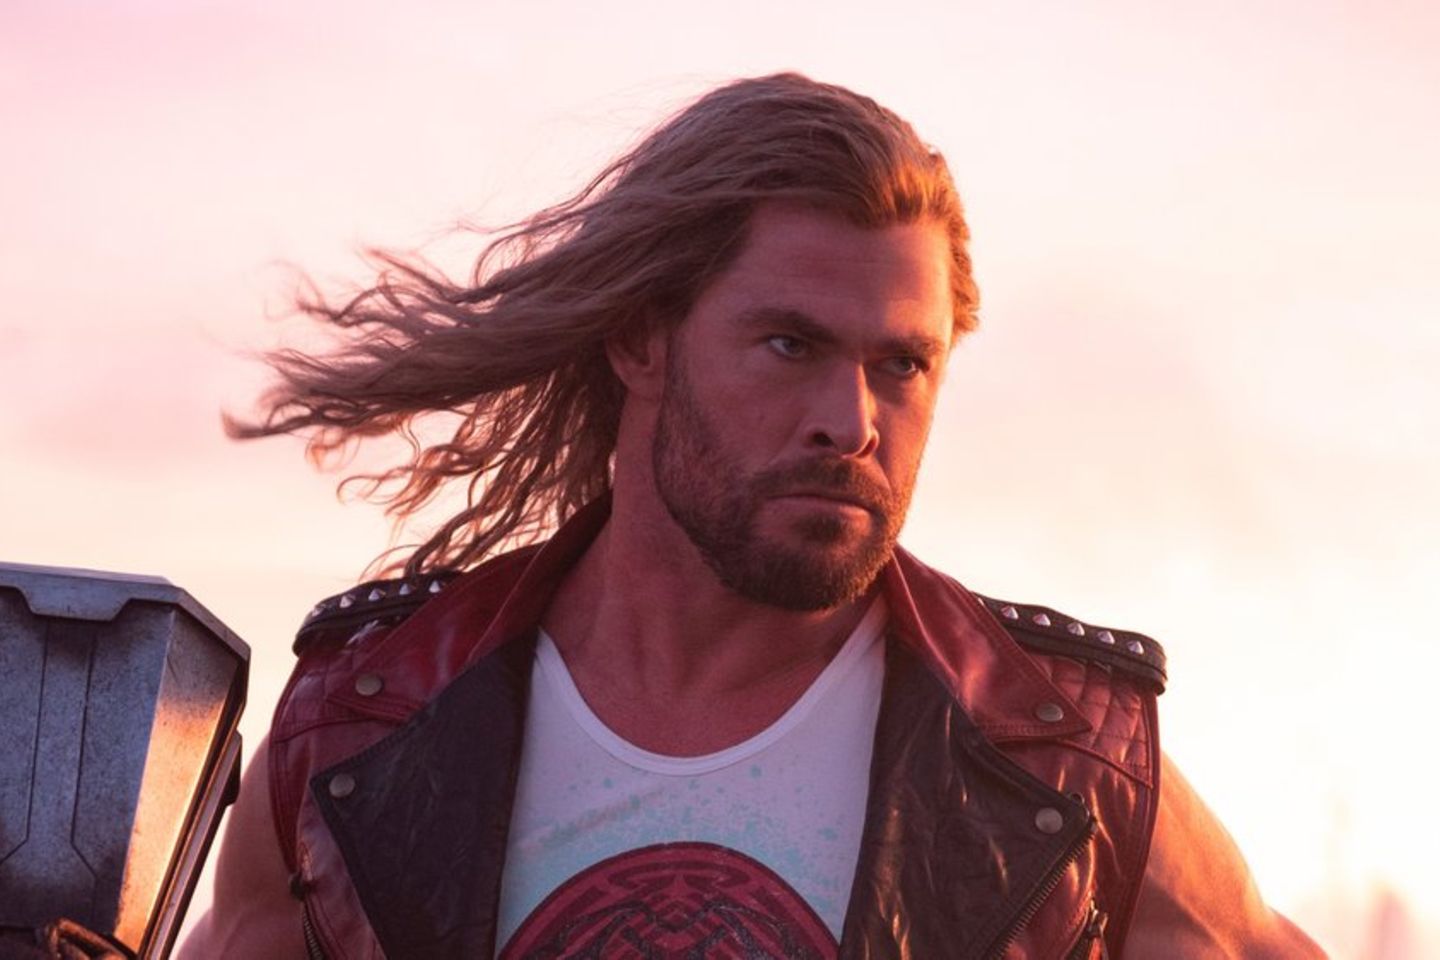 Selbst Chris Hemsworth findet "Thor 4" zu albern